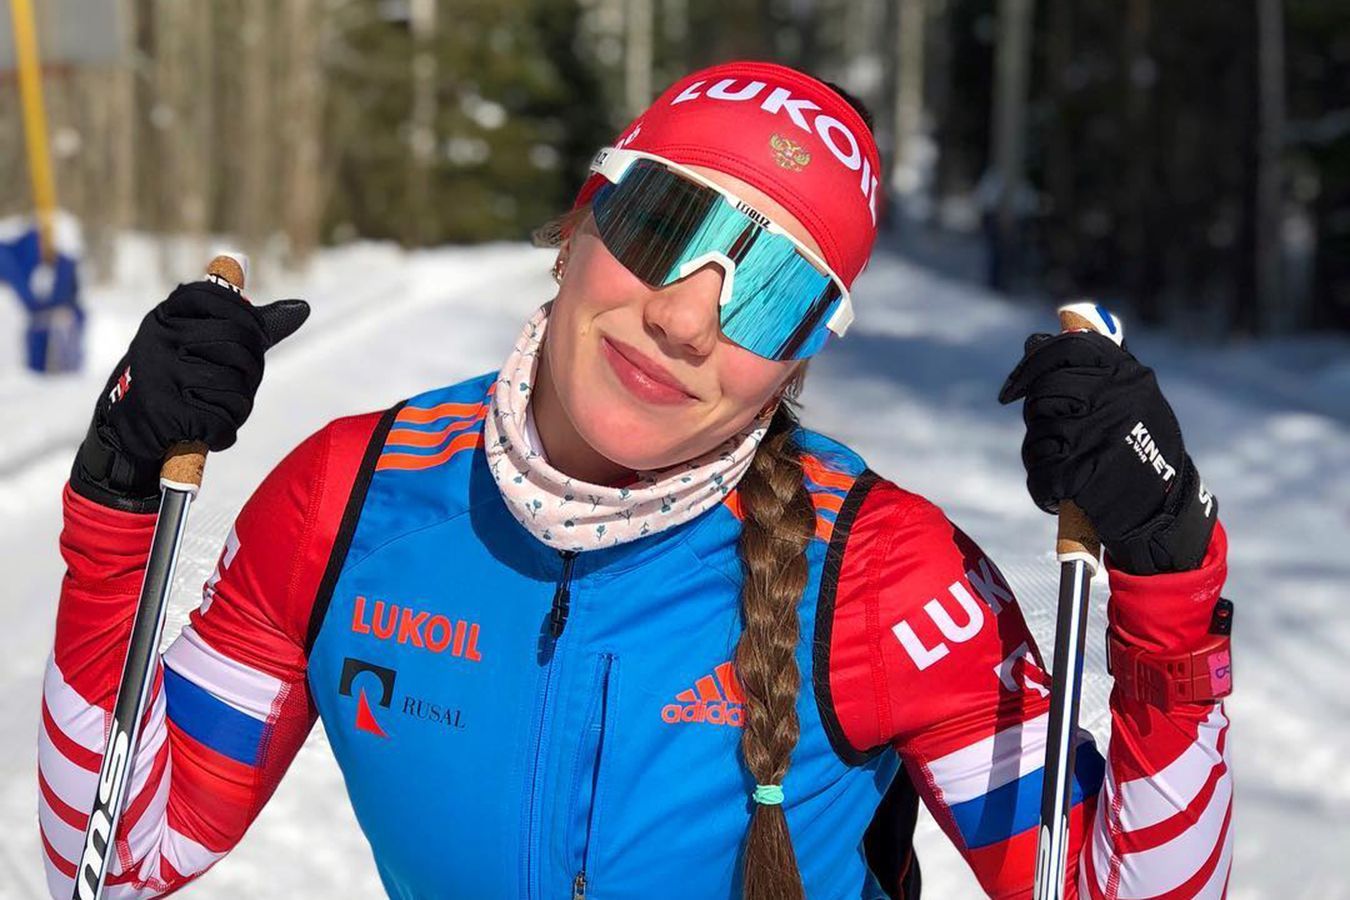 Шашилов рассказал, что сделал экс-лыжнице Шевченко подарок за победу на ЧР по биатлону